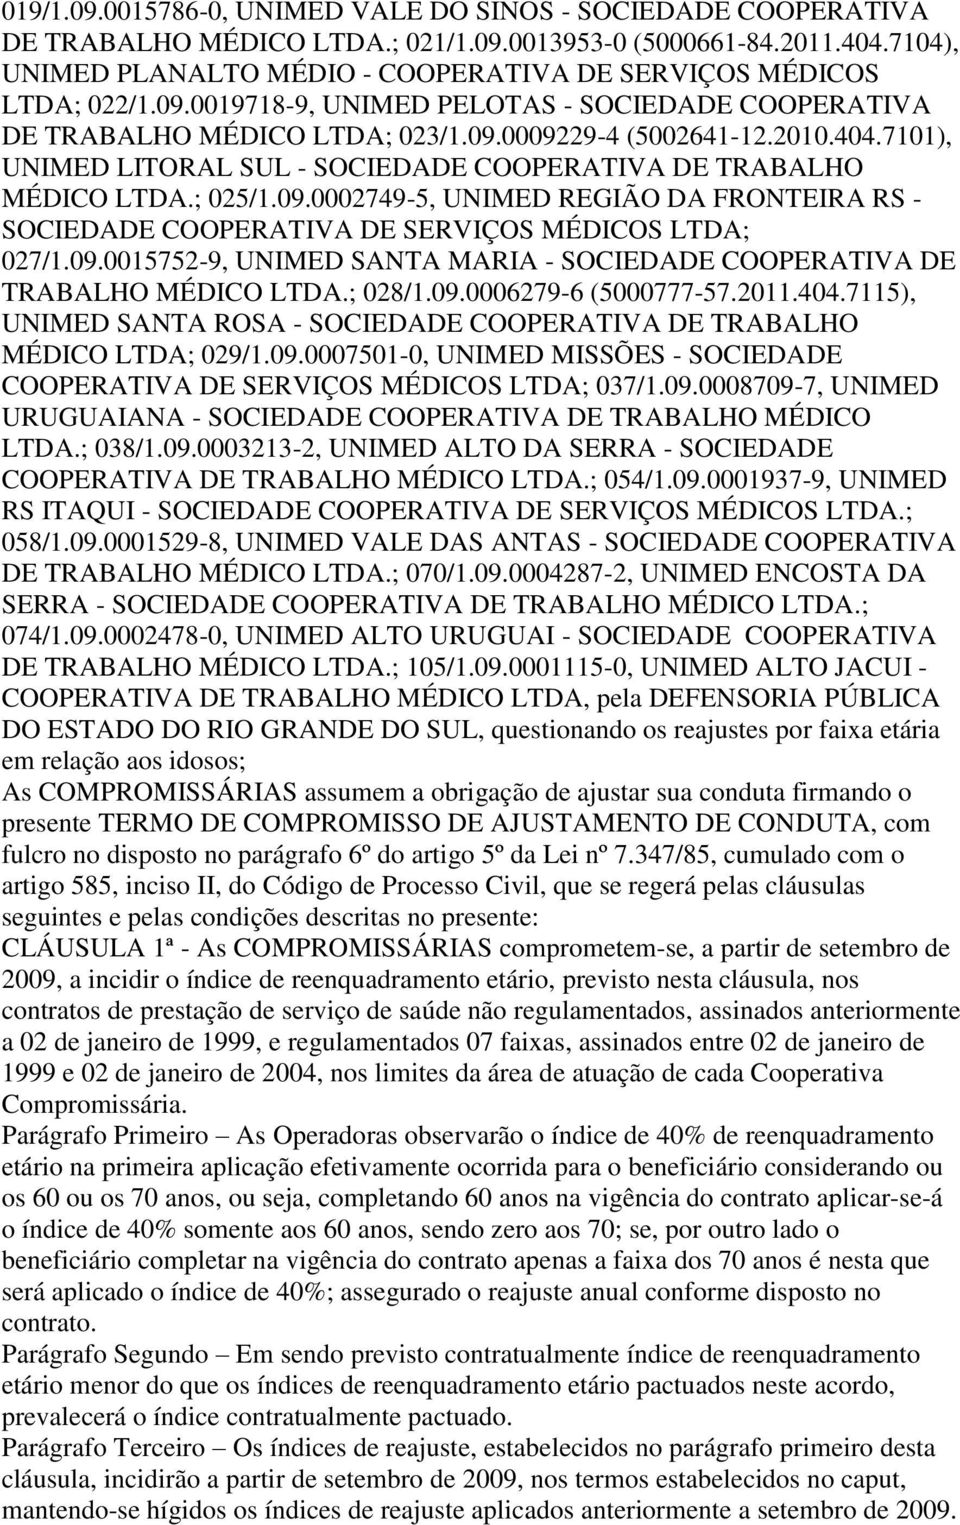 7101), UNIMED LITORAL SUL - SOCIEDADE COOPERATIVA DE TRABALHO MÉDICO LTDA.; 025/1.09.0002749-5, UNIMED REGIÃO DA FRONTEIRA RS - SOCIEDADE COOPERATIVA DE SERVIÇOS MÉDICOS LTDA; 027/1.09.0015752-9, UNIMED SANTA MARIA - SOCIEDADE COOPERATIVA DE TRABALHO MÉDICO LTDA.